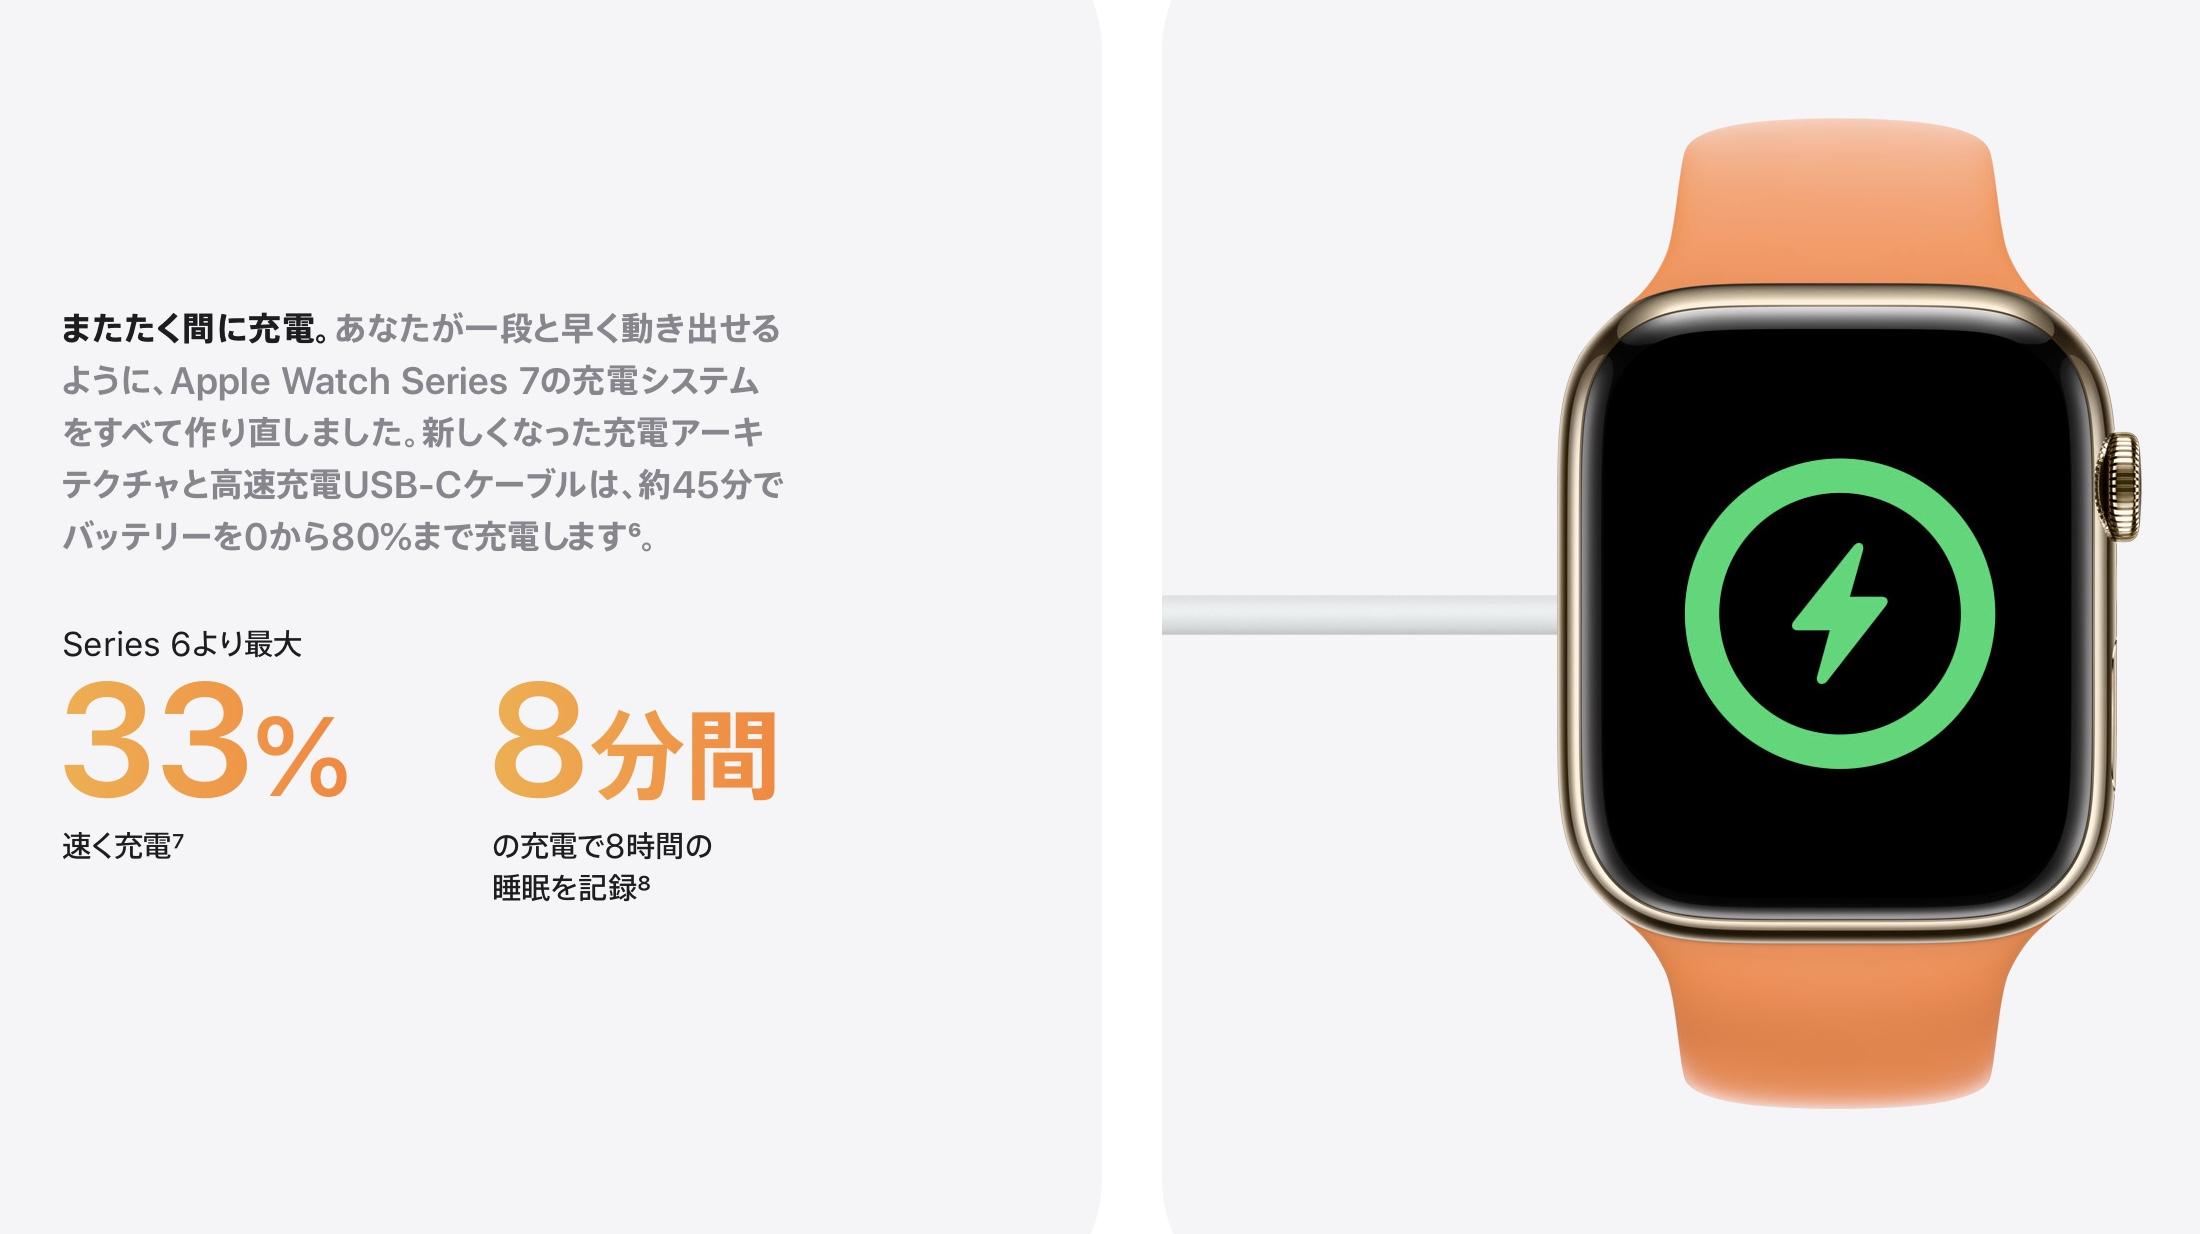 Apple Watch Series7を高速充電したいなら、対応するUSB-Cアダプタが 